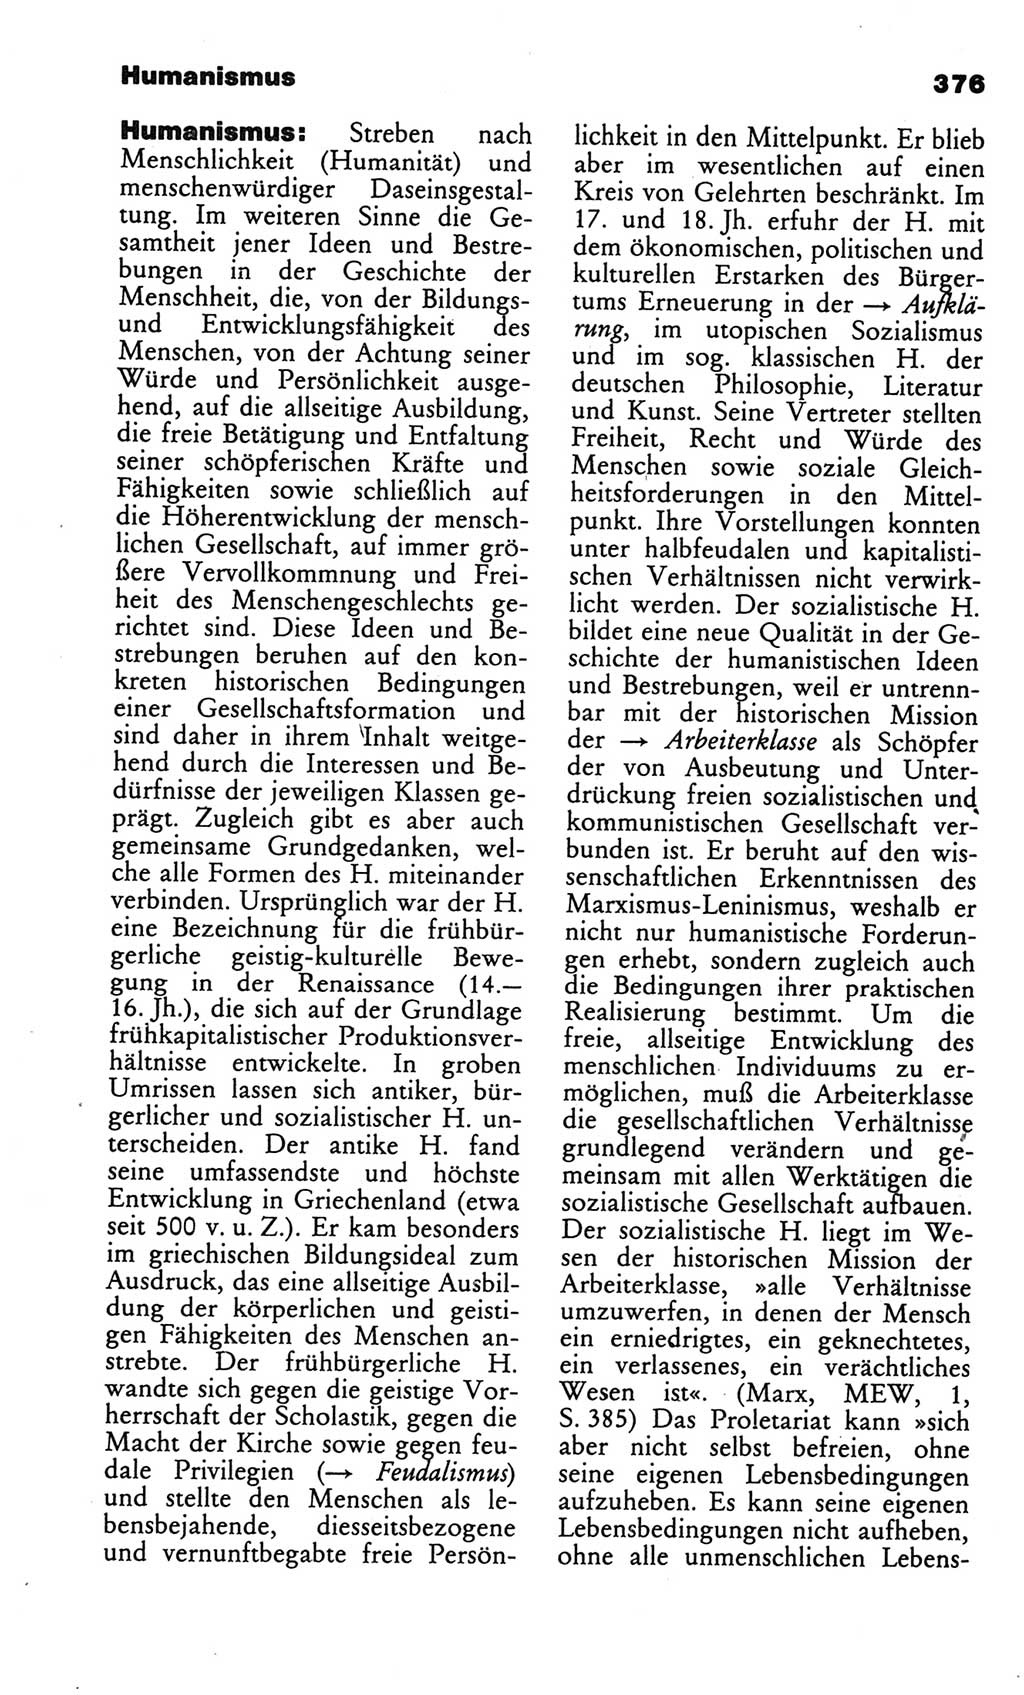 Kleines politisches Wörterbuch [Deutsche Demokratische Republik (DDR)] 1986, Seite 376 (Kl. pol. Wb. DDR 1986, S. 376)